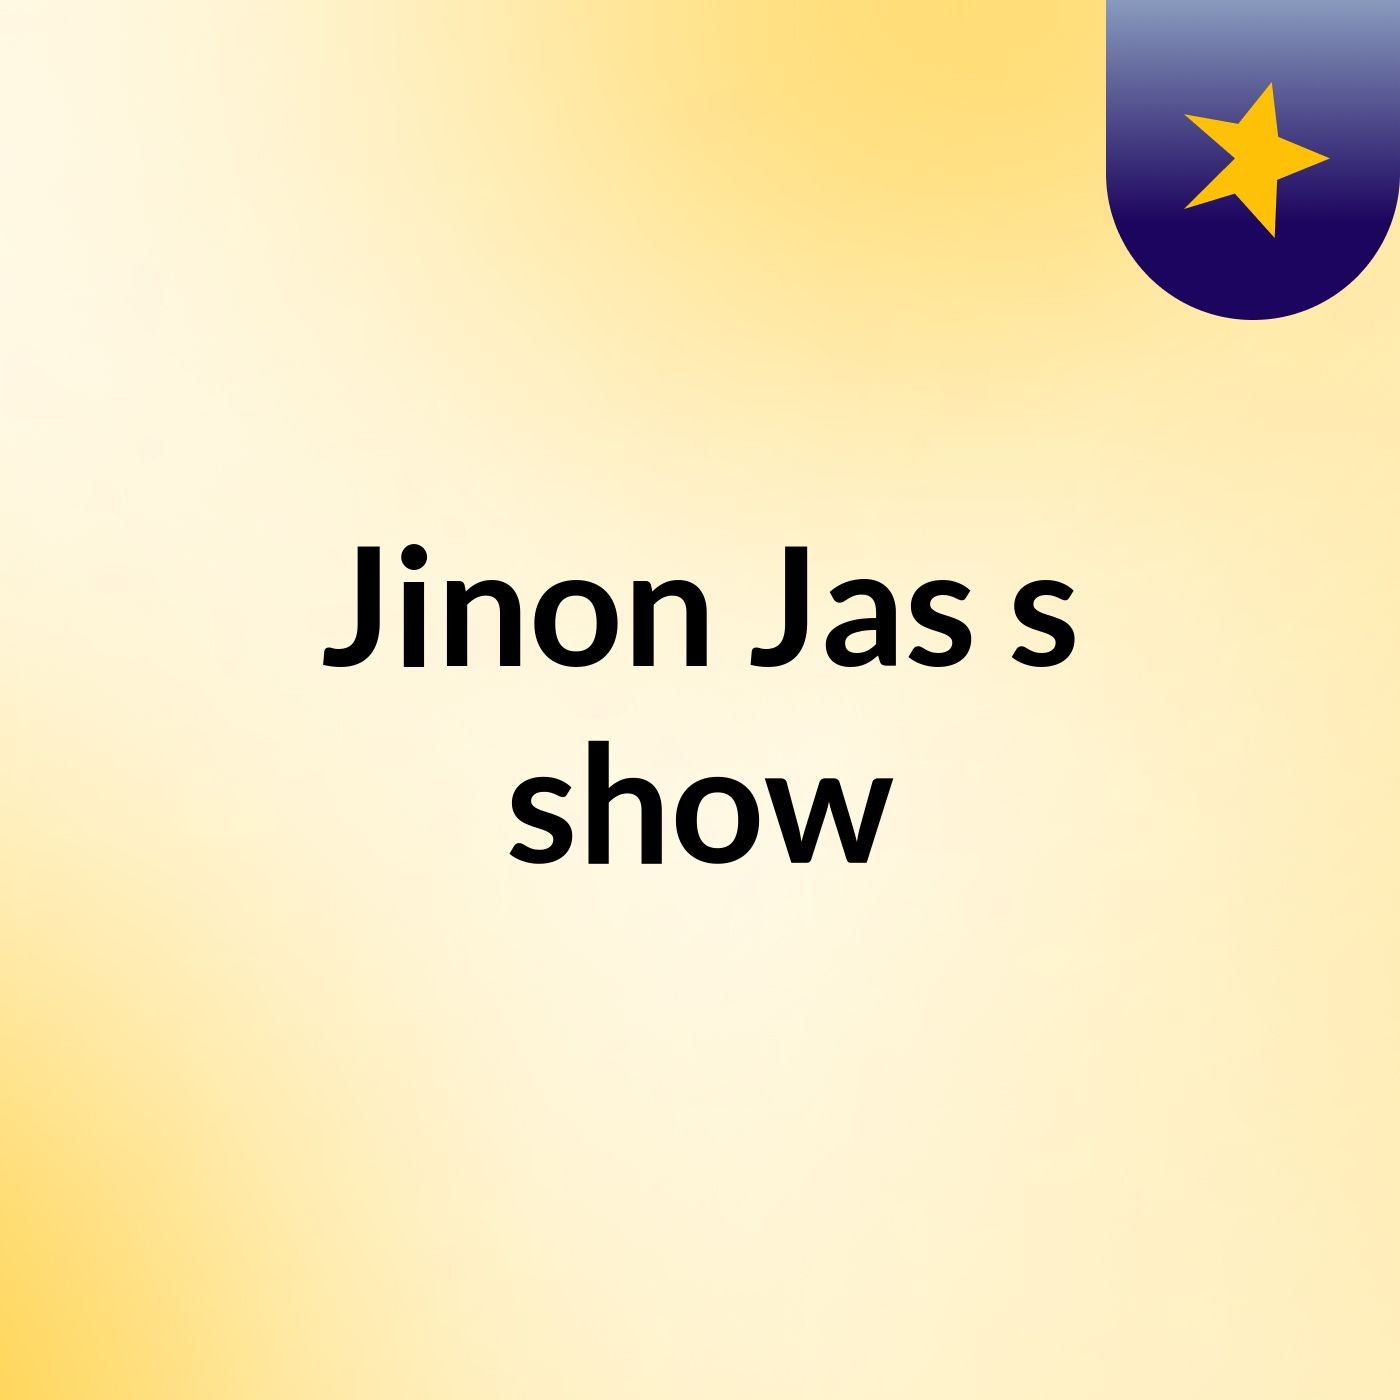 Jinon Jas's show